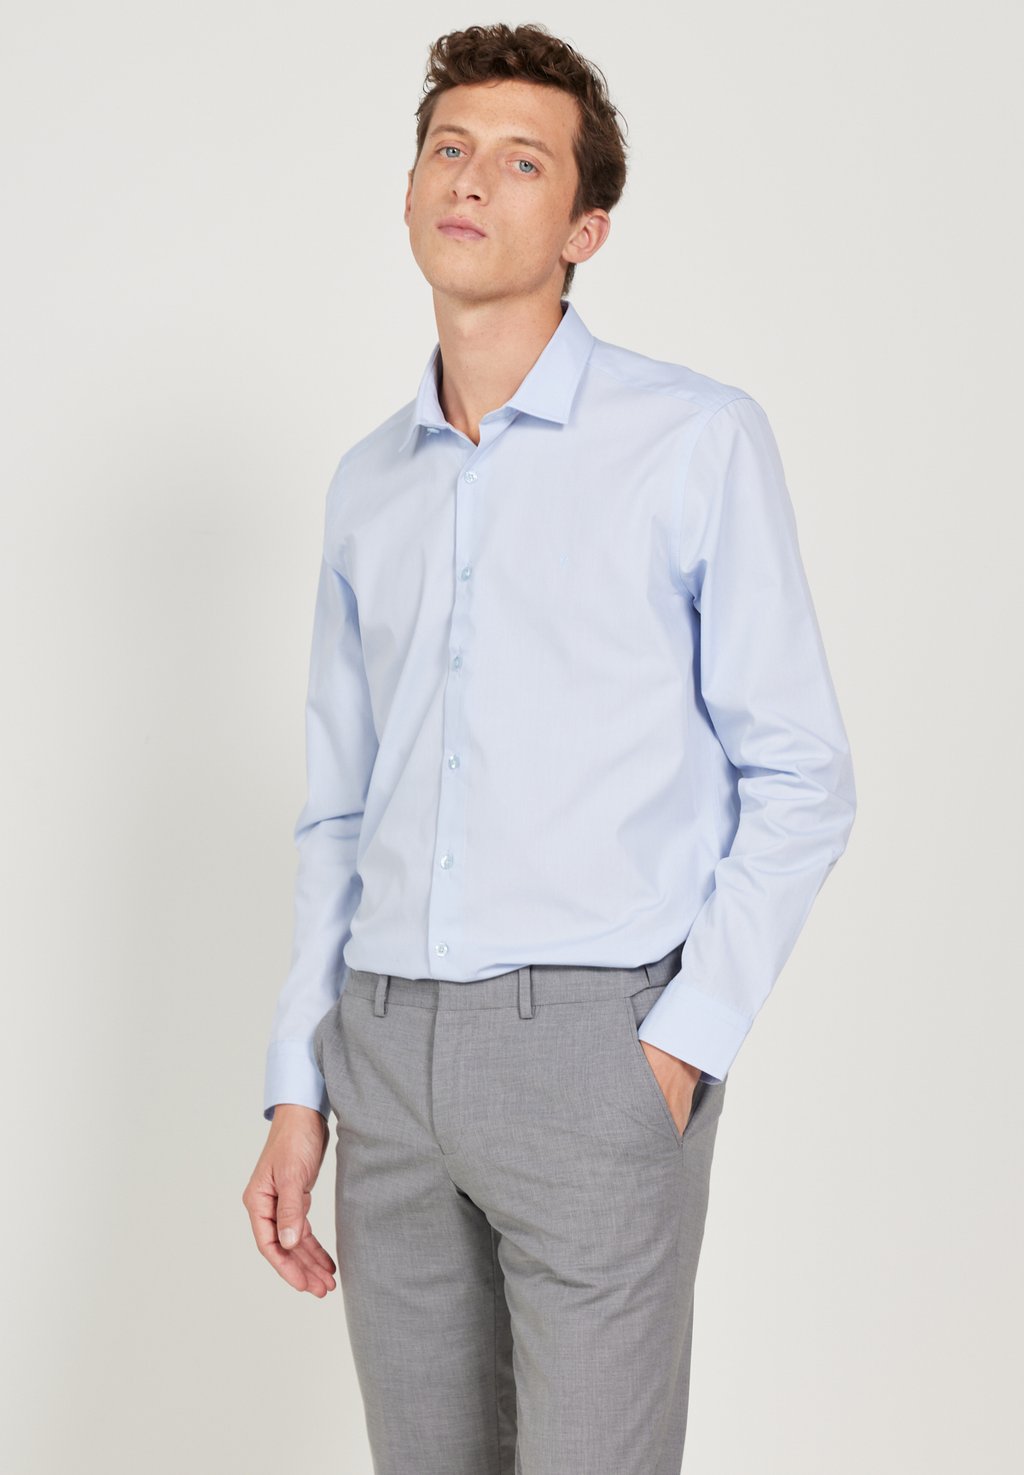 Деловая рубашка SLIM FIT LONG-SLEEVED CVC SHIRT AC&CO / ALTINYILDIZ CLASSICS, цвет Slim Fit Shirt деловая рубашка long sleeved cvc ac